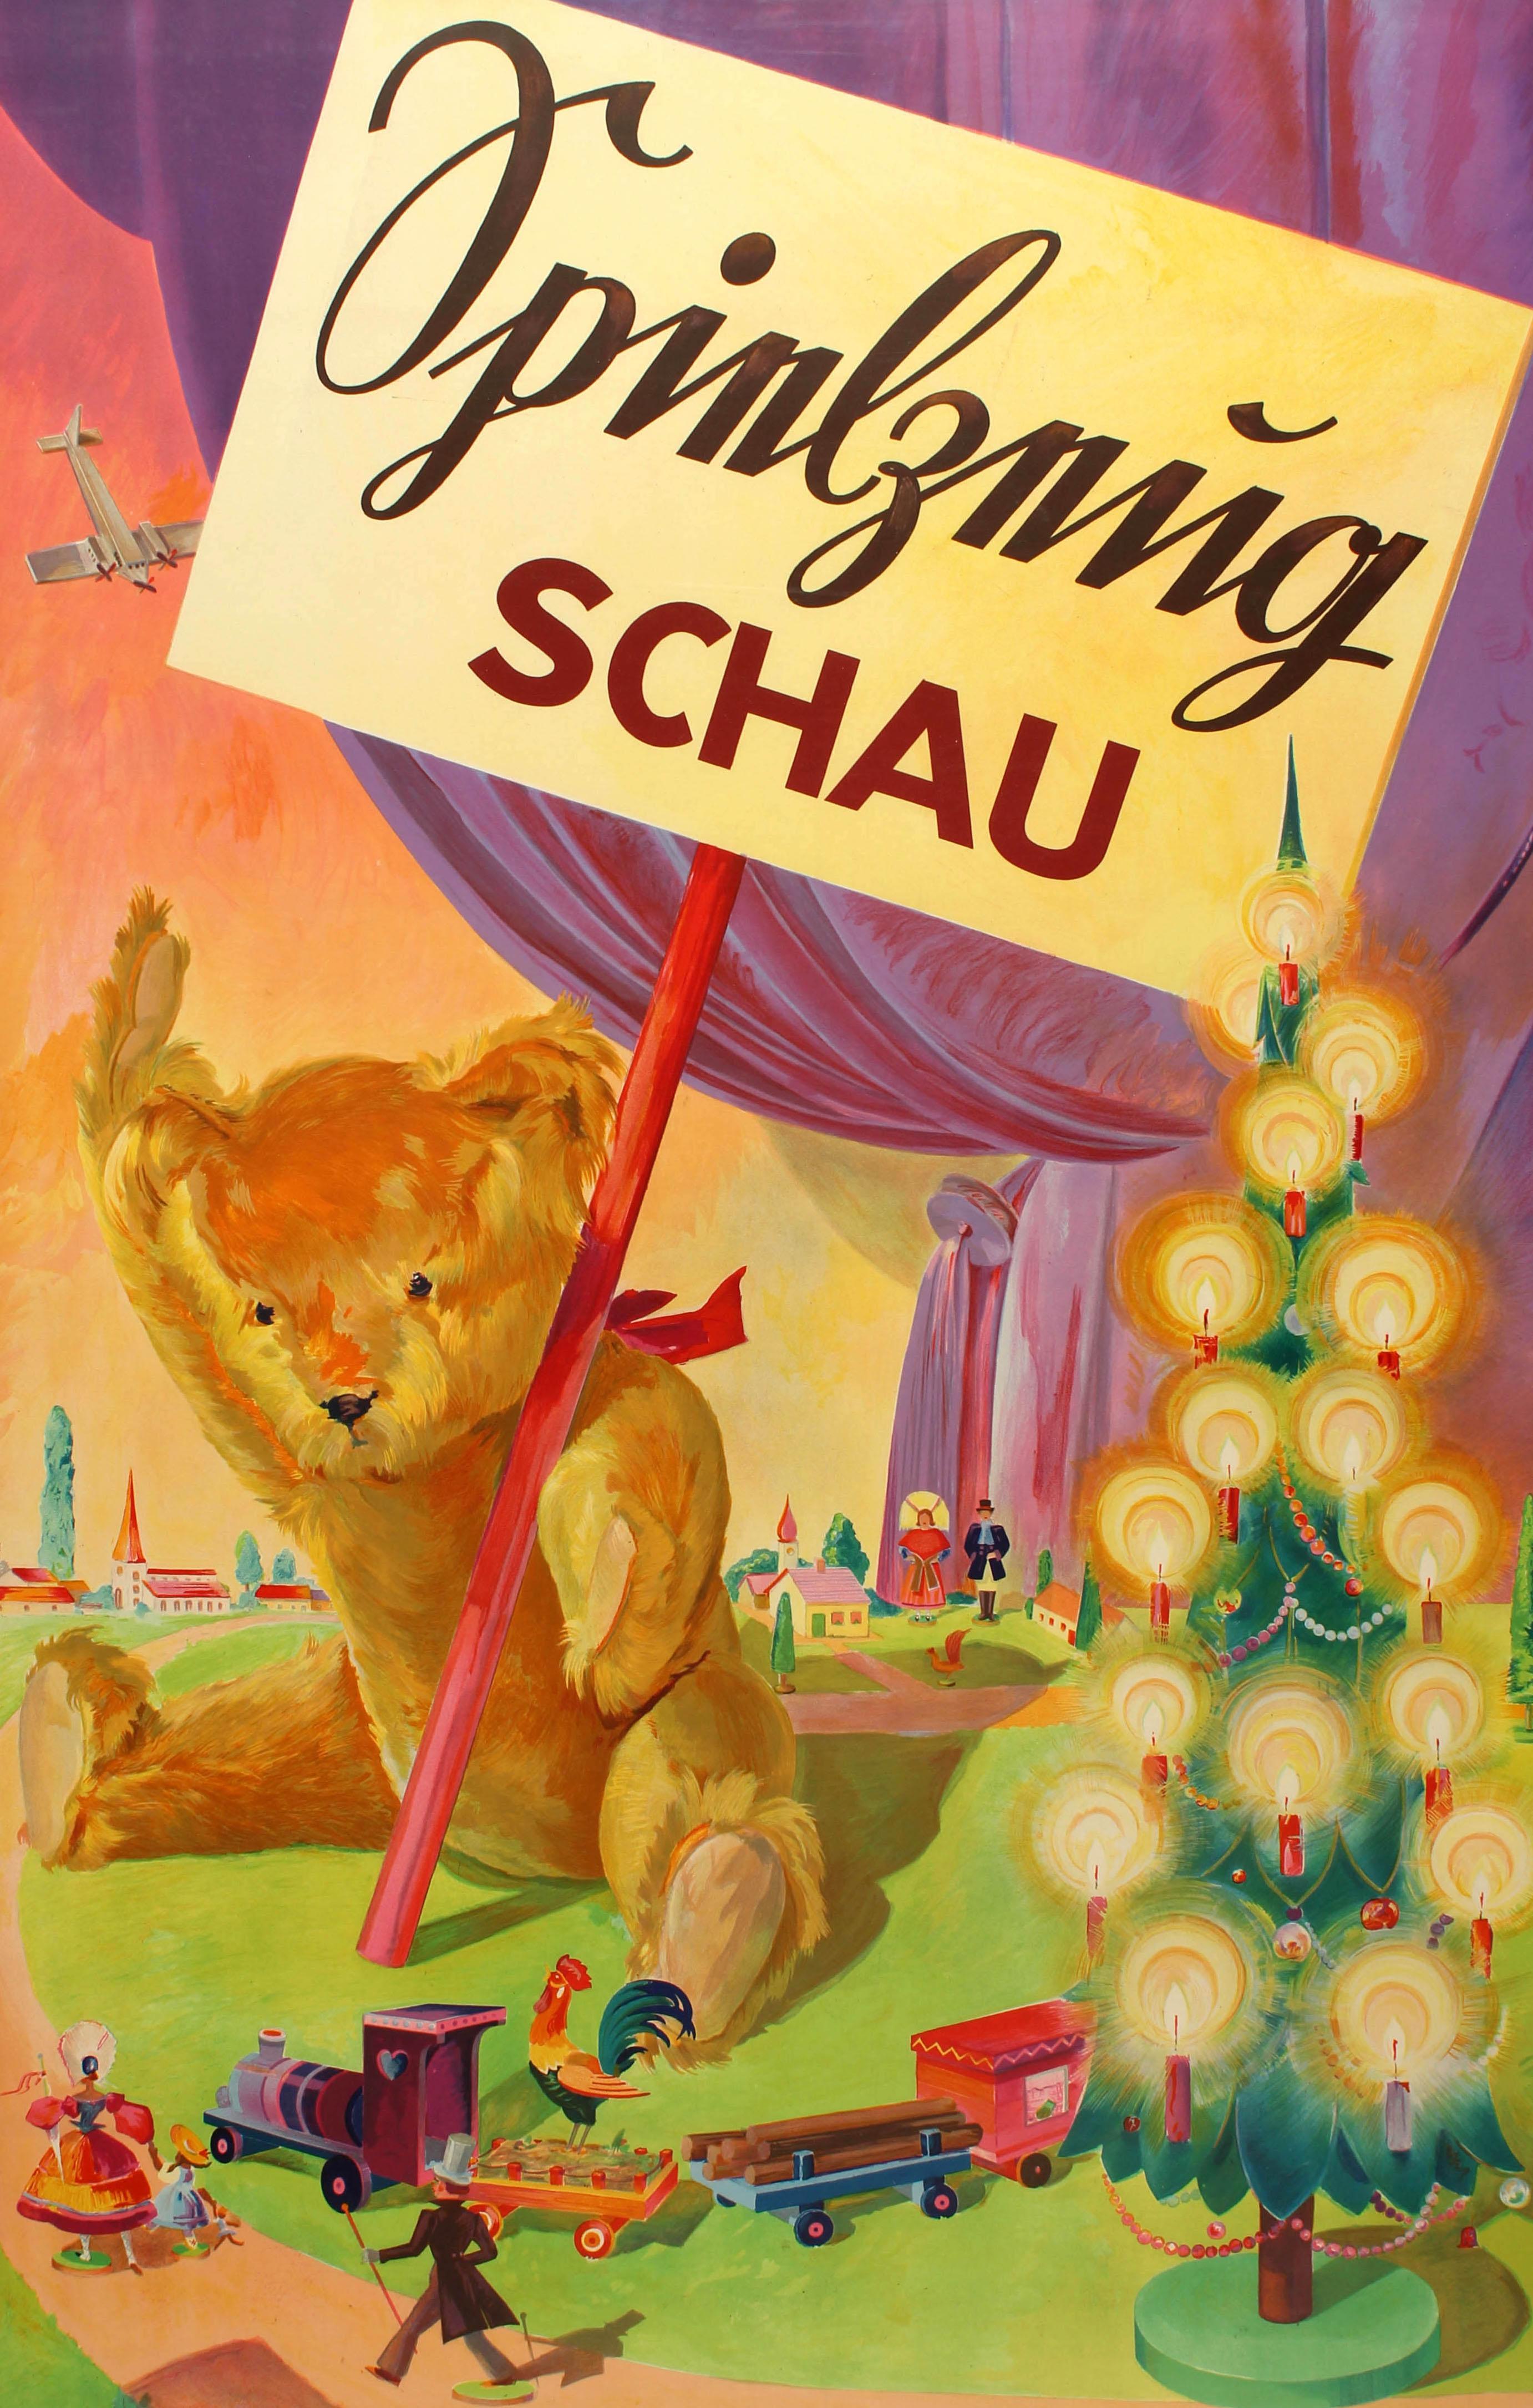 Originalplakat für eine Spielzeugausstellung mit einer farbenfrohen Illustration eines Teddybären, der dem Betrachter zuwinkt, während er ein Schild für die Ausstellung hält, umgeben von einer hölzernen Spielzeugeisenbahn, einem beleuchteten